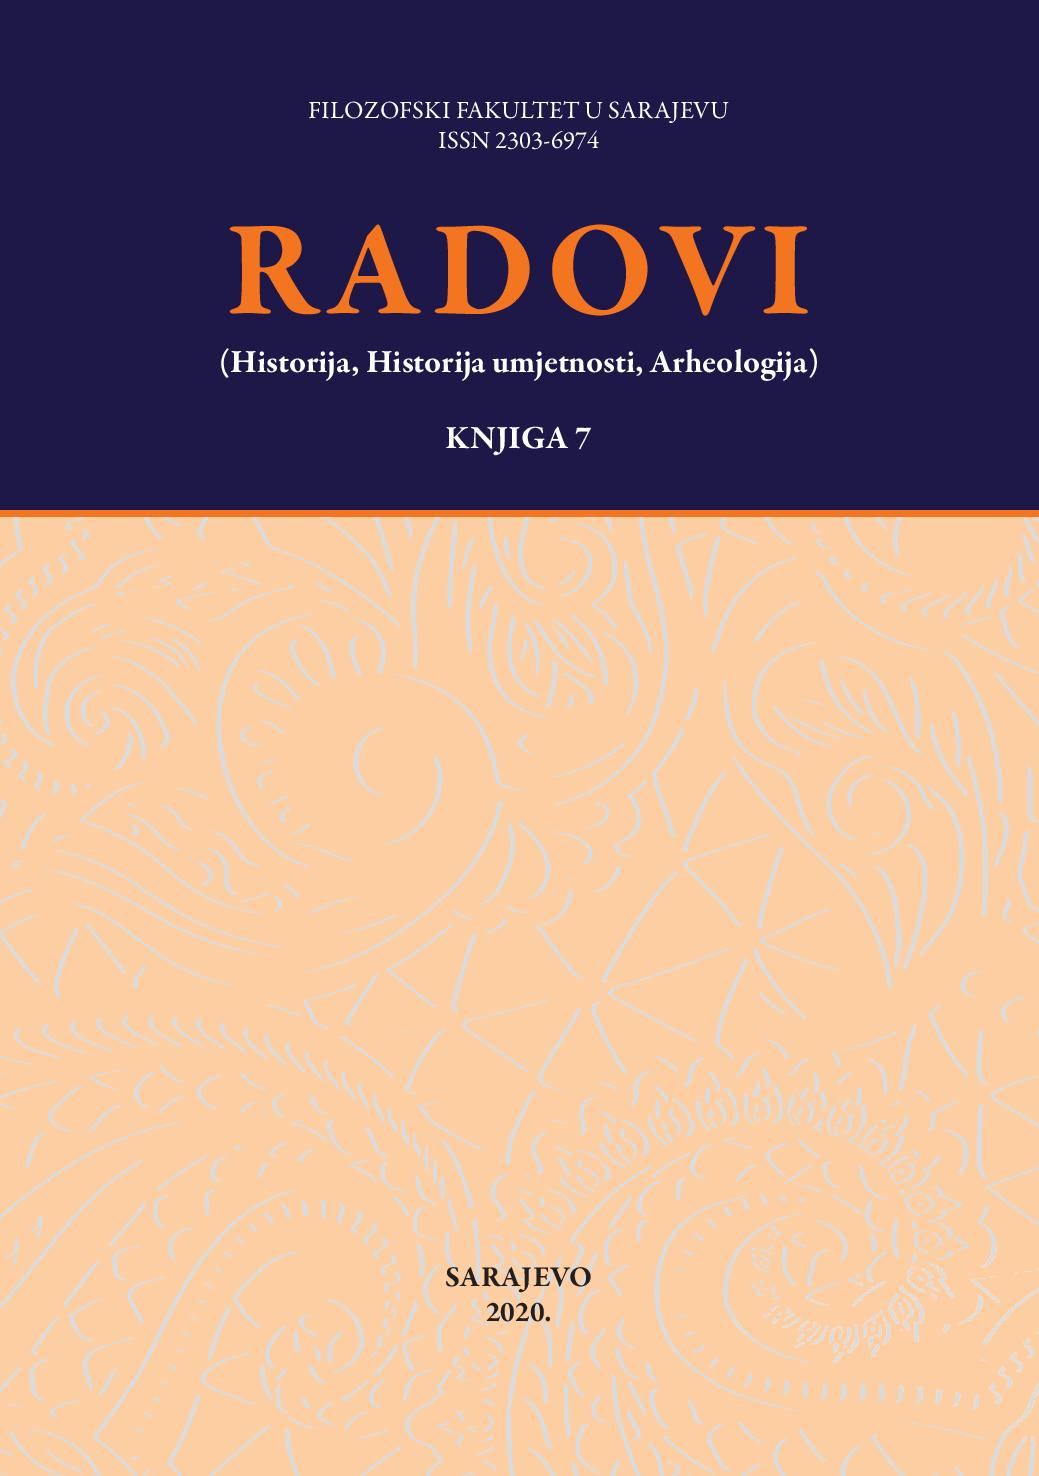 Bibliography of Radovi Filozofskog fakulteta u Sarajevu (Historija, Historija umjetnosti, Arheologija) Cover Image